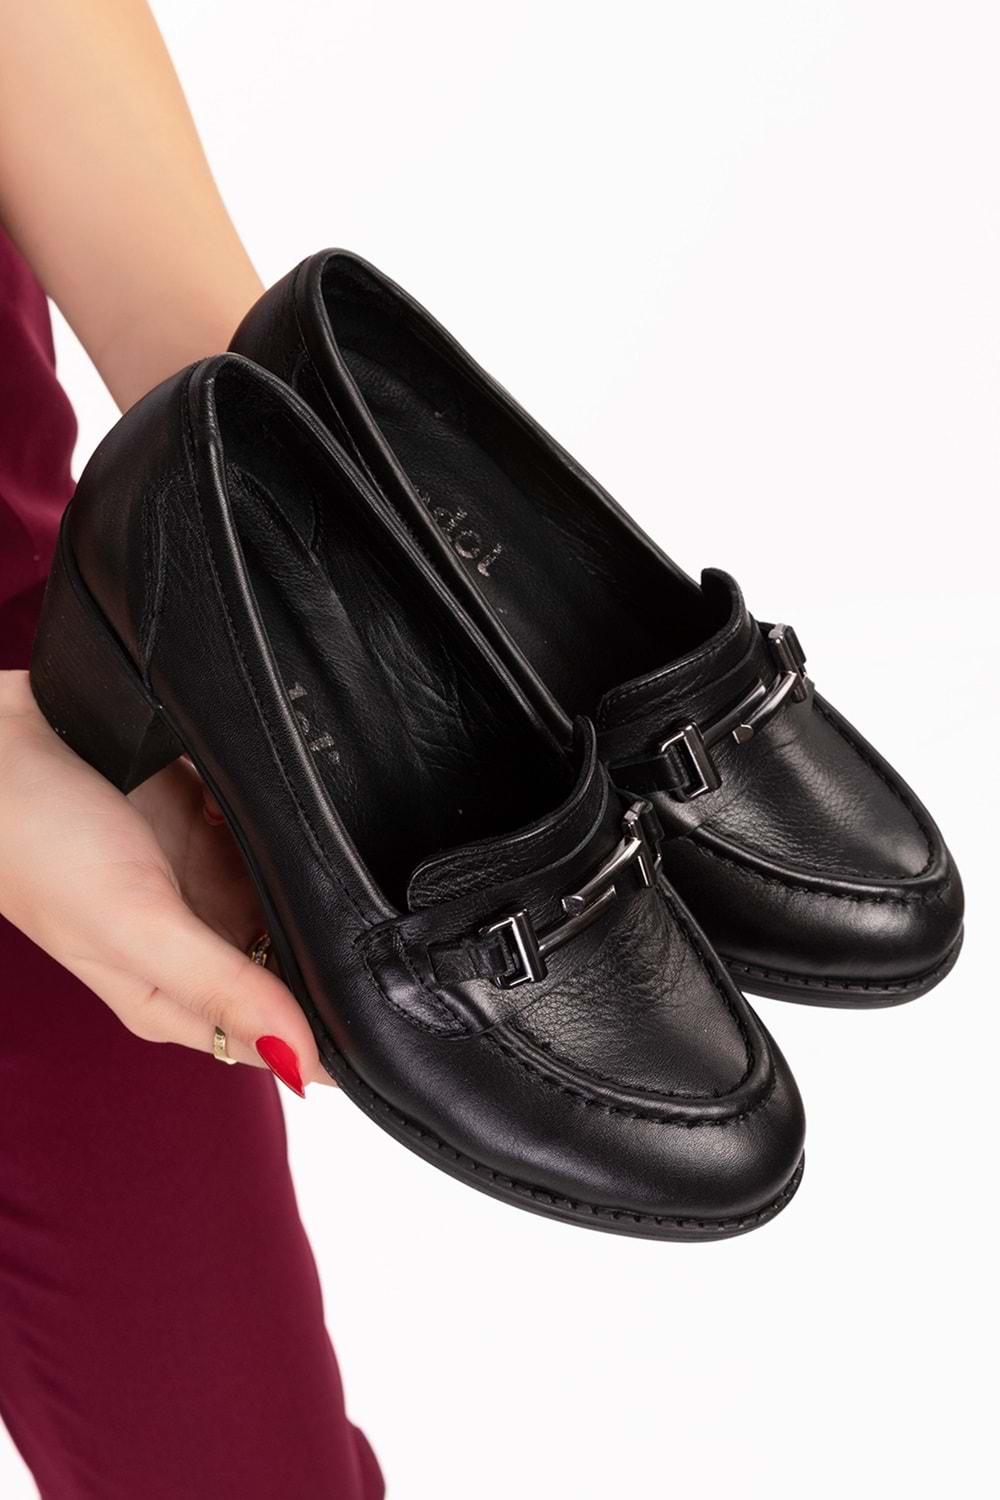 Gondol Kadın Hakiki Deri Rahat Topuklu Ayakkabı anl.7082 - Siyah - 40